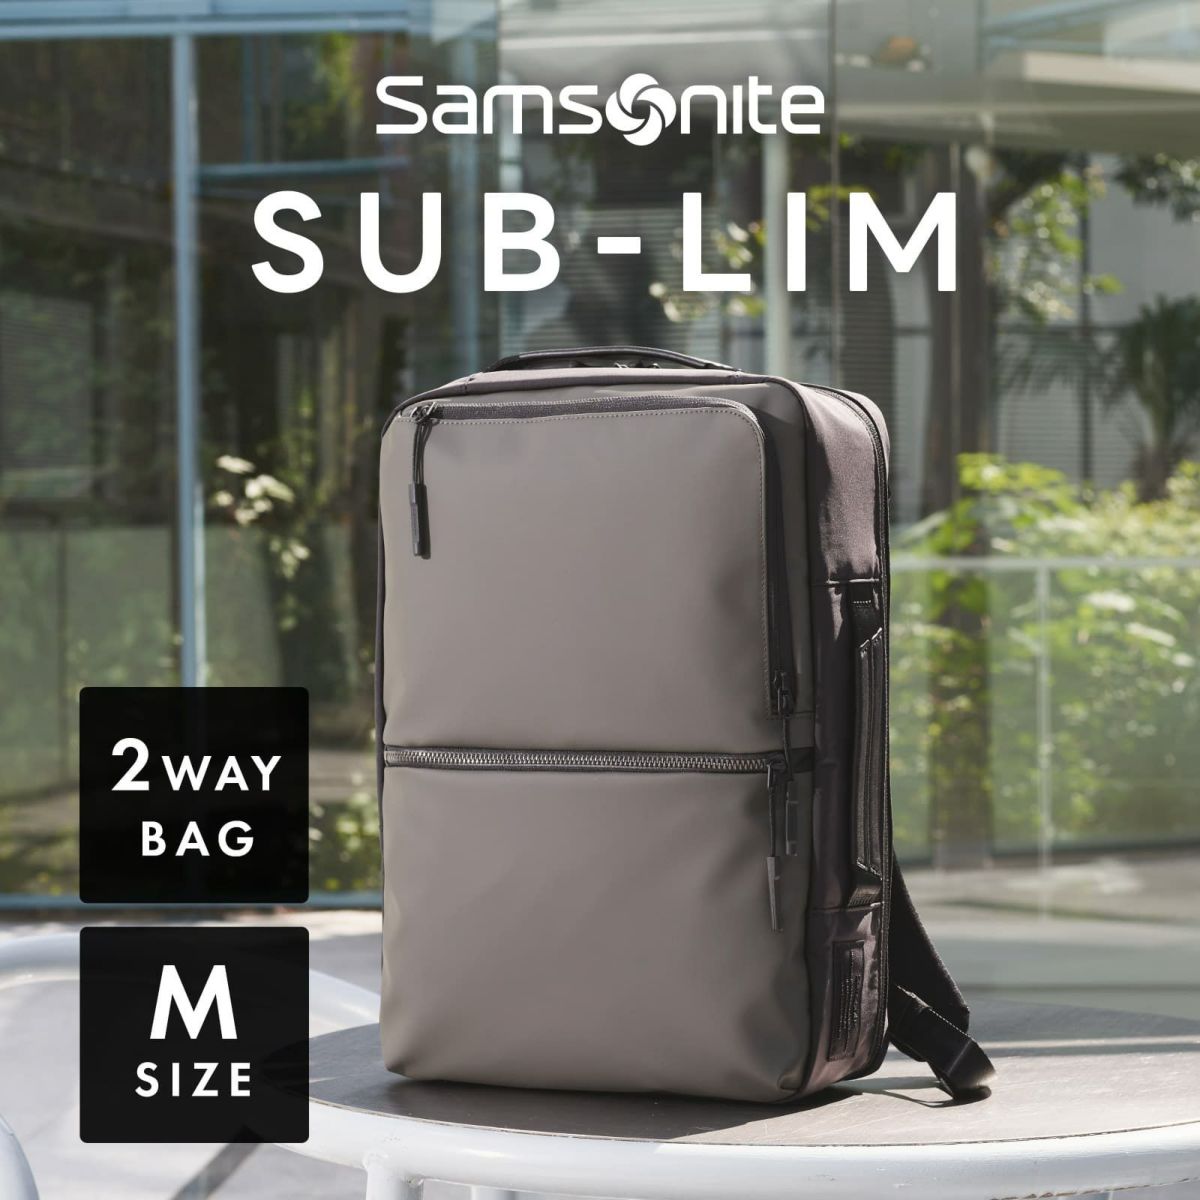 サムソナイト Samsonite , ビジネスバッグ 2way , SUB-LIM 2WAY BAG M